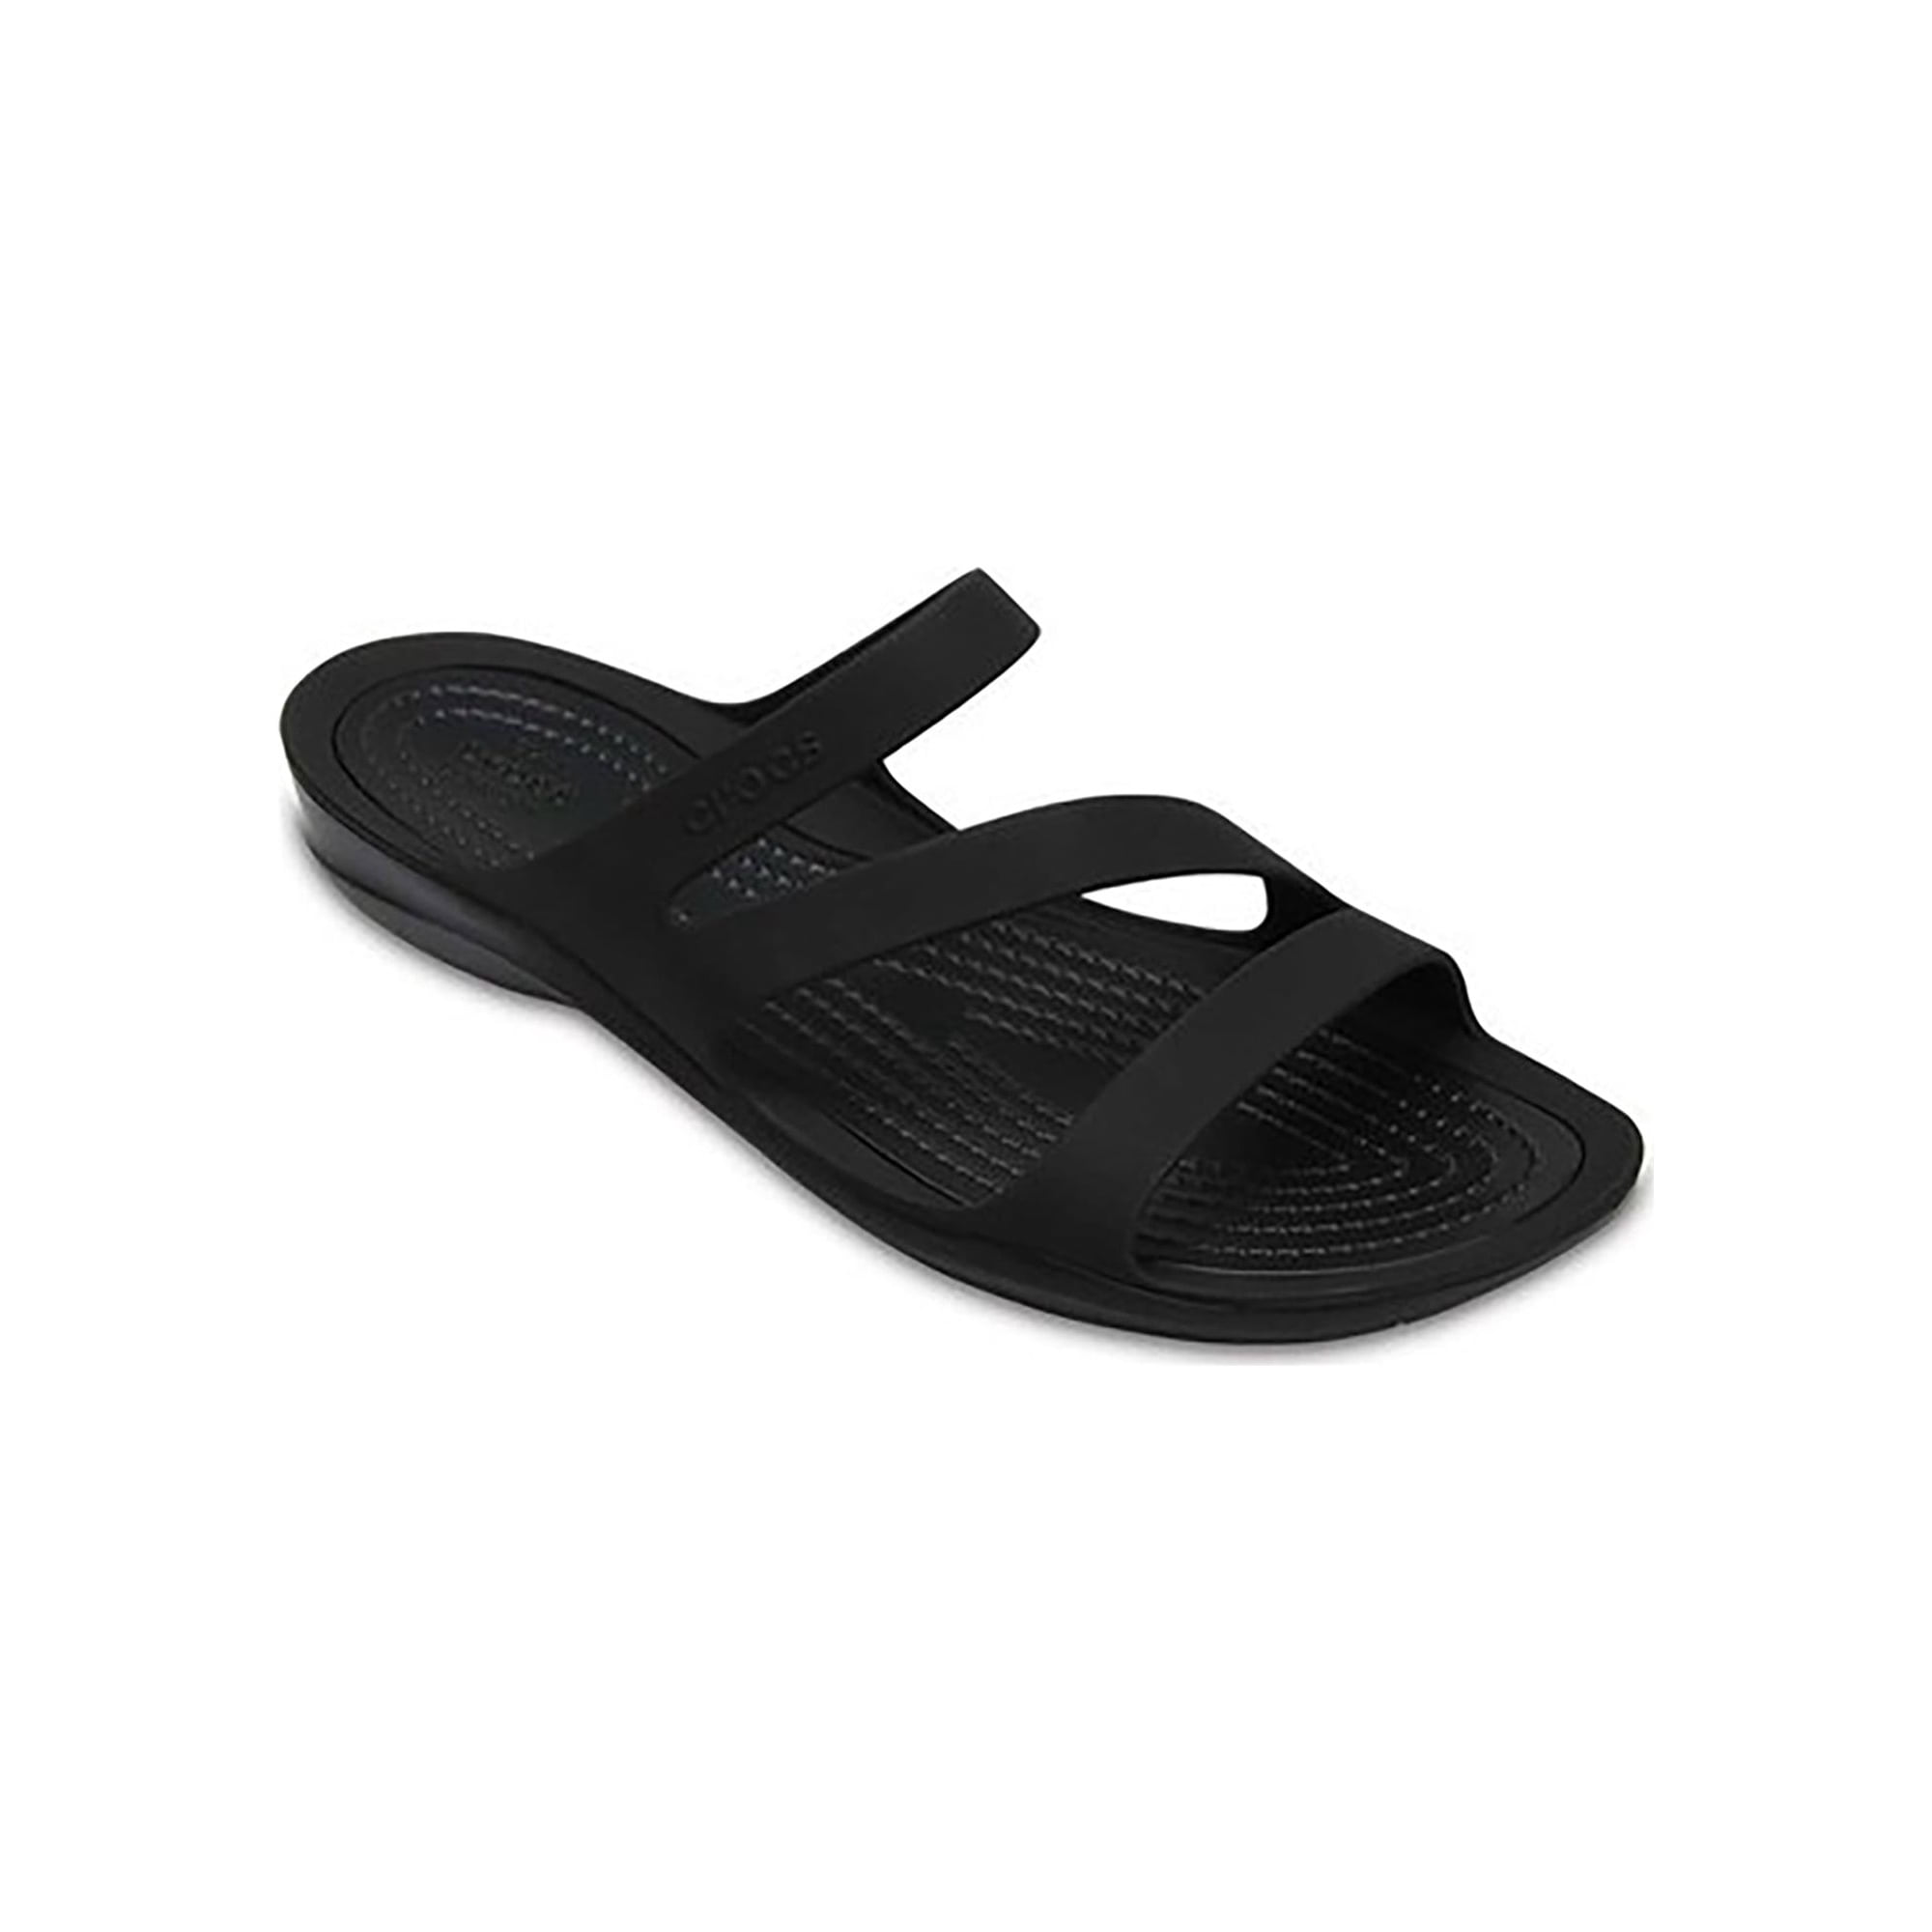 Crocs Women's Swiftwater Slide Sandal